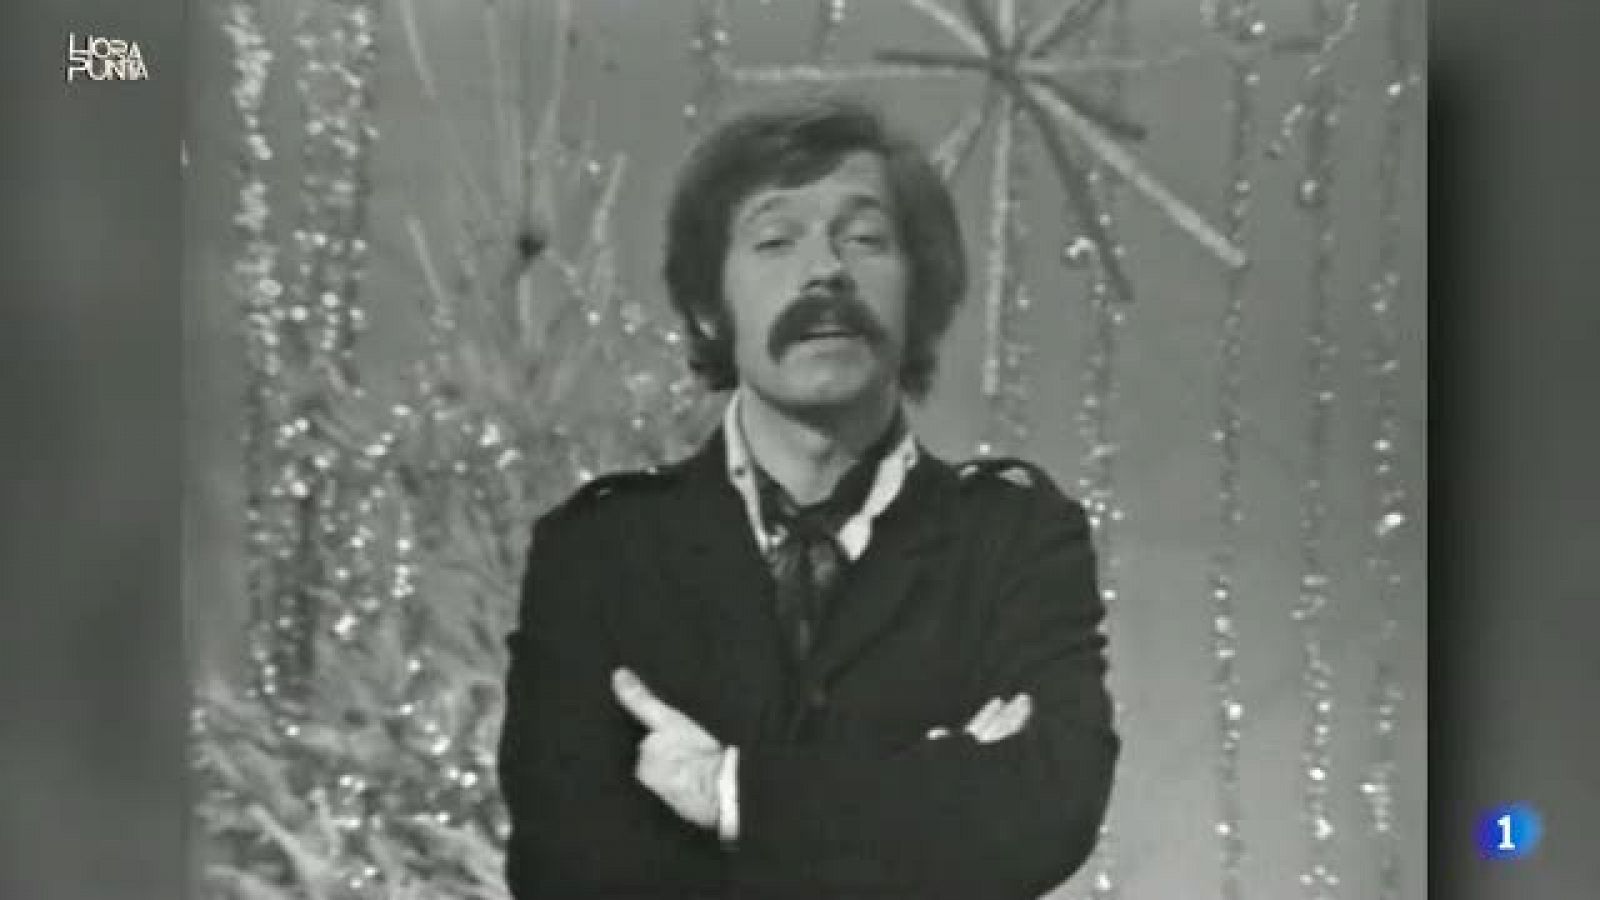 Hora Punta - 'Último Grito' fue el primer programa musical de Jose María Iñigo en TVE en 1968